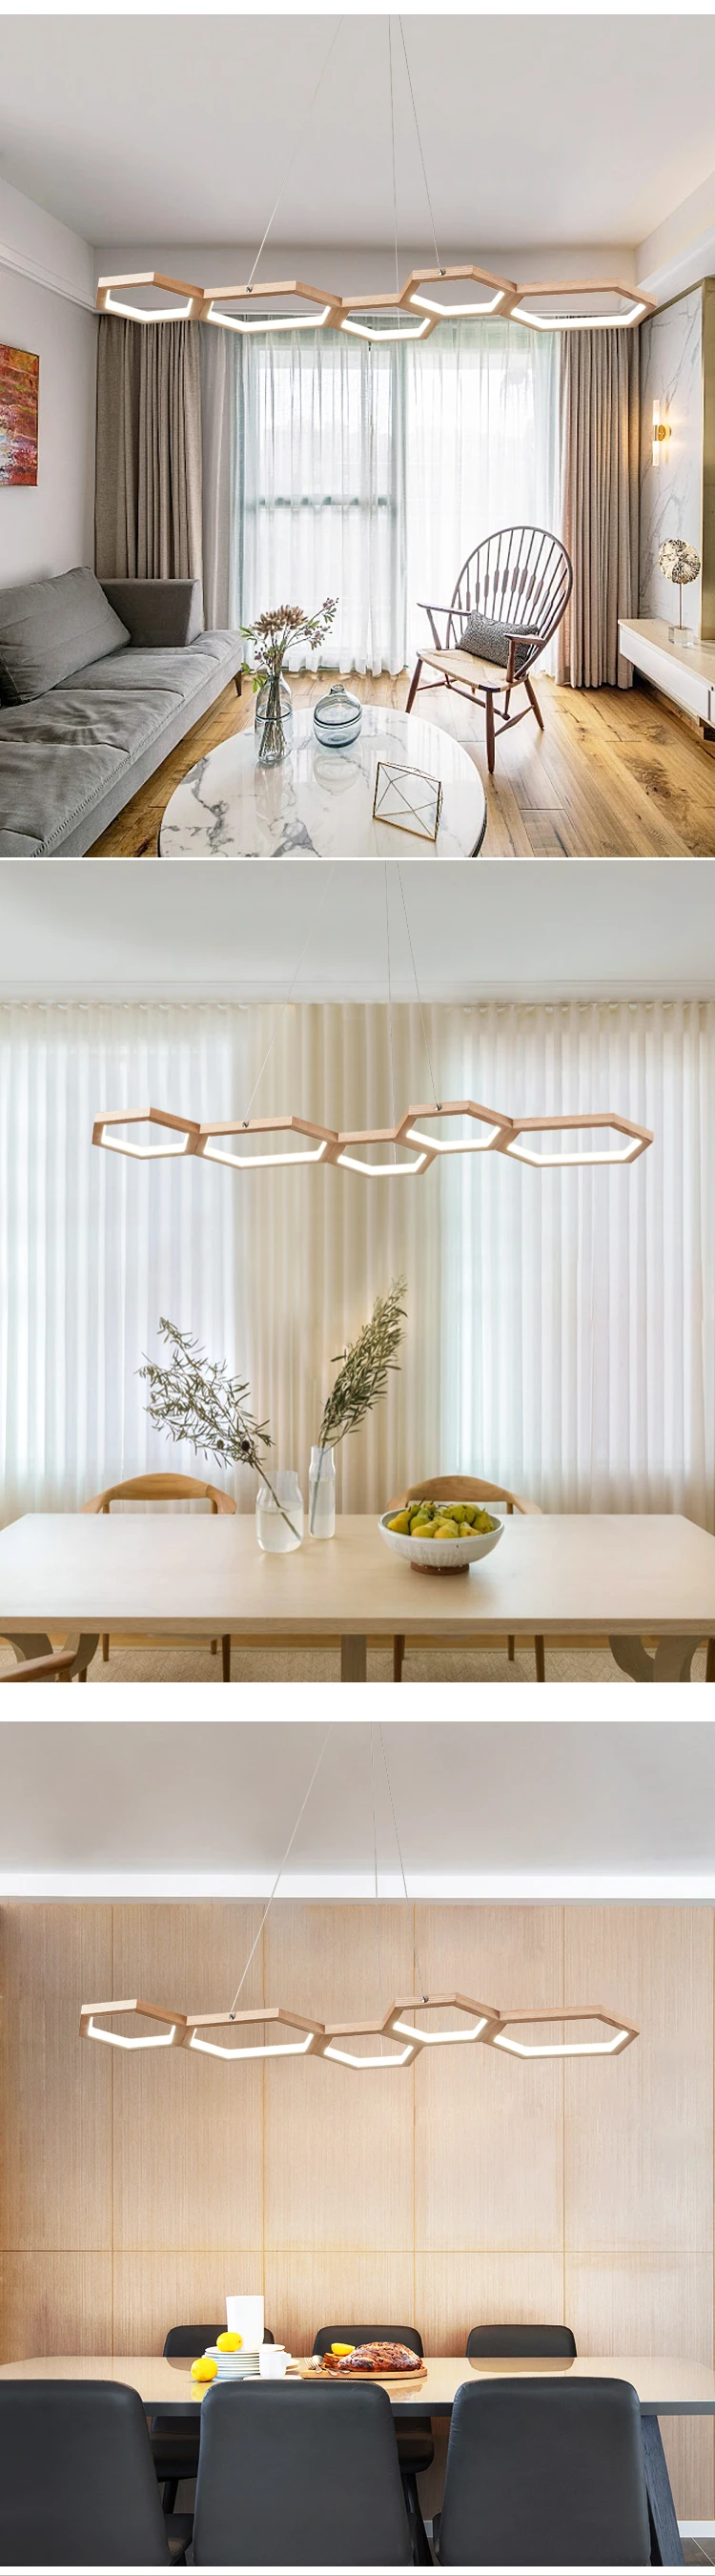 TRAZOS современный подвесной светильник светодиодный подвесной светильник подвесные светильники для столовой гостиной спальни кухонного салона